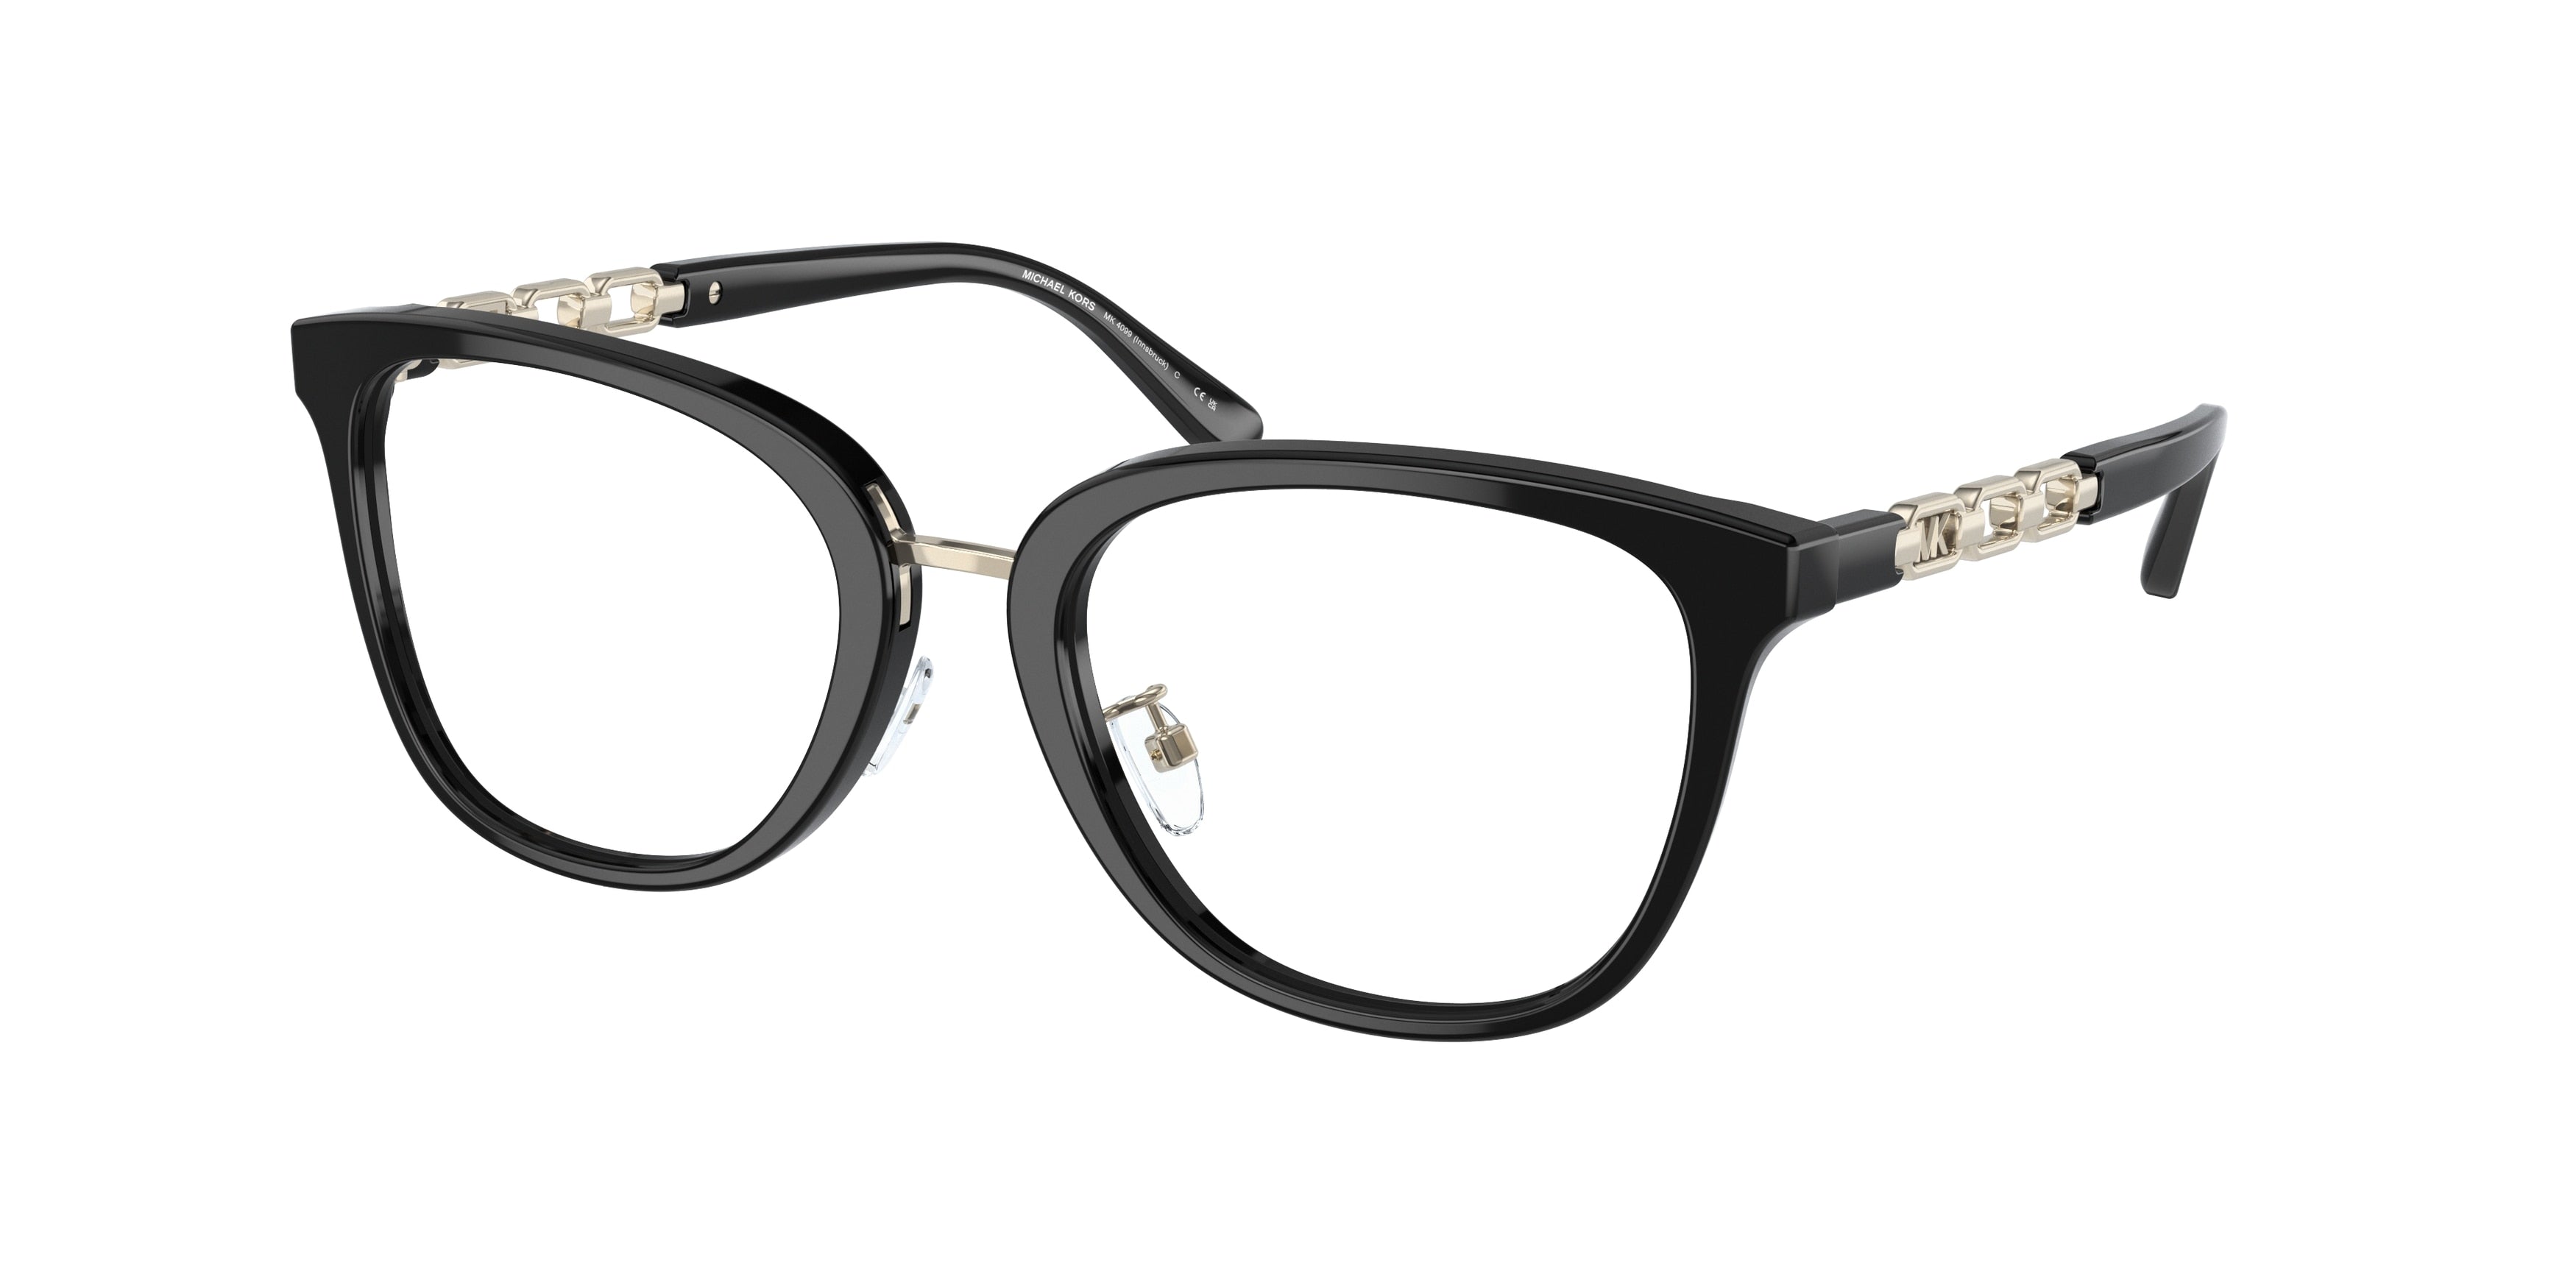 Michael Kors INNSBRUCK MK4099 Square Eyeglasses  3005-Black 52-140-19 - Color Map Black